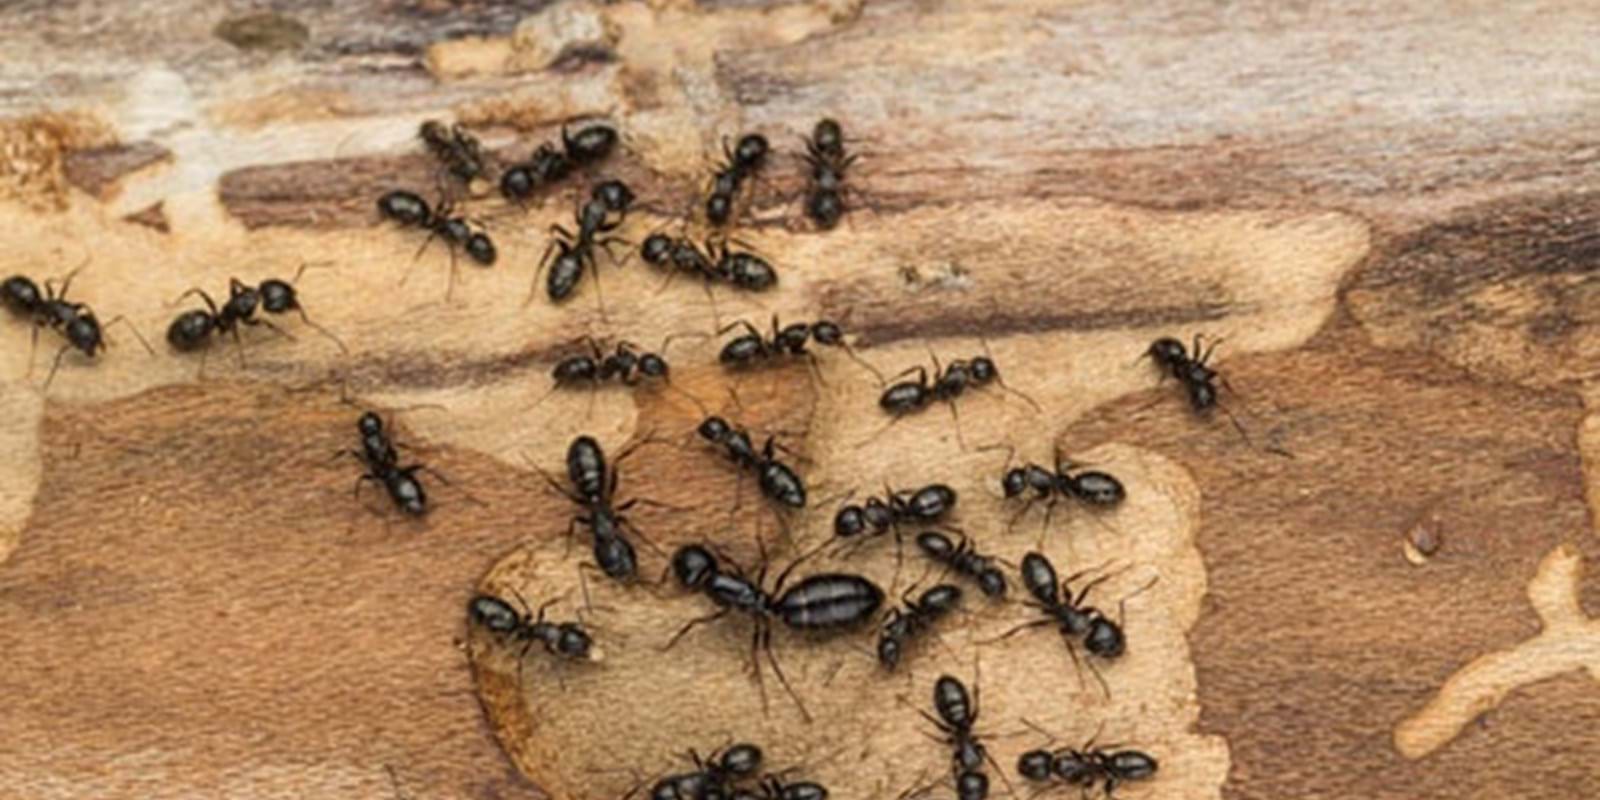 Les fourmis charpentières